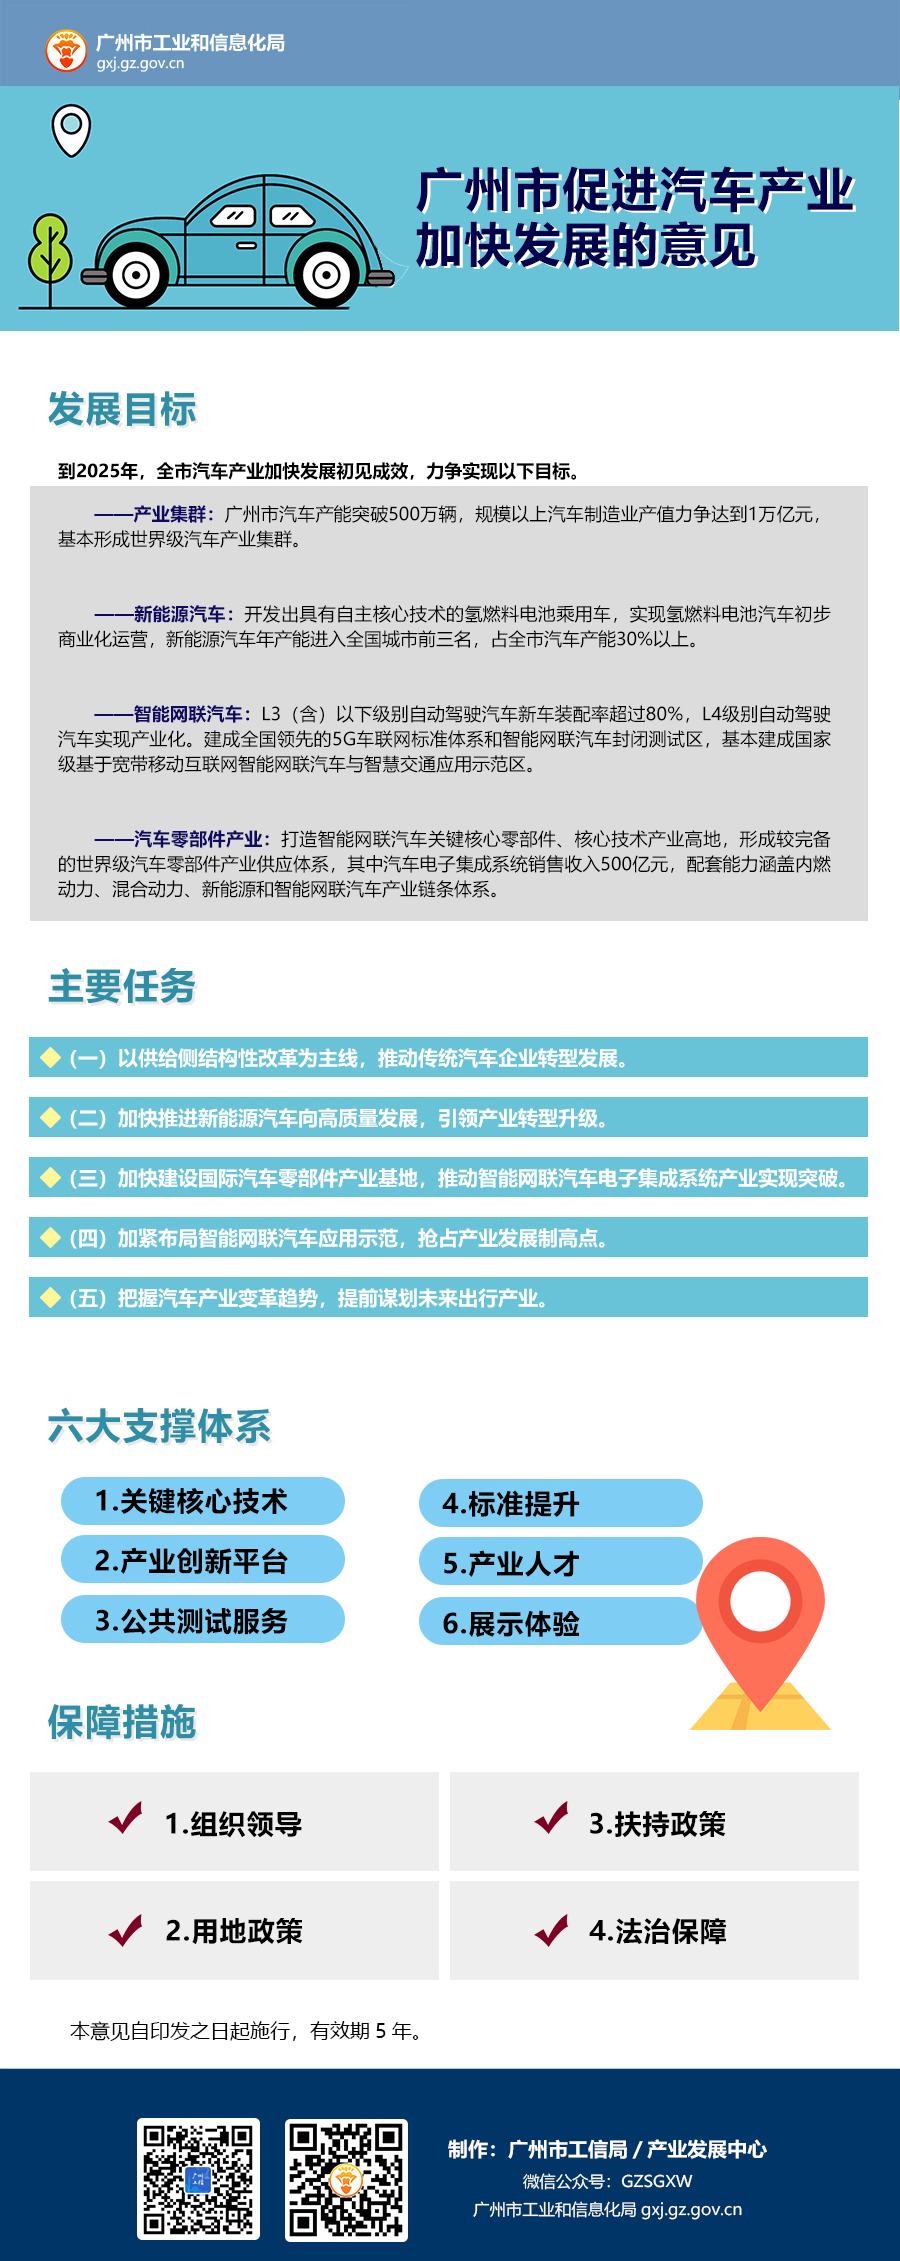 广州市人民政府办公厅关于促进汽车产业加快发展的意见.jpg